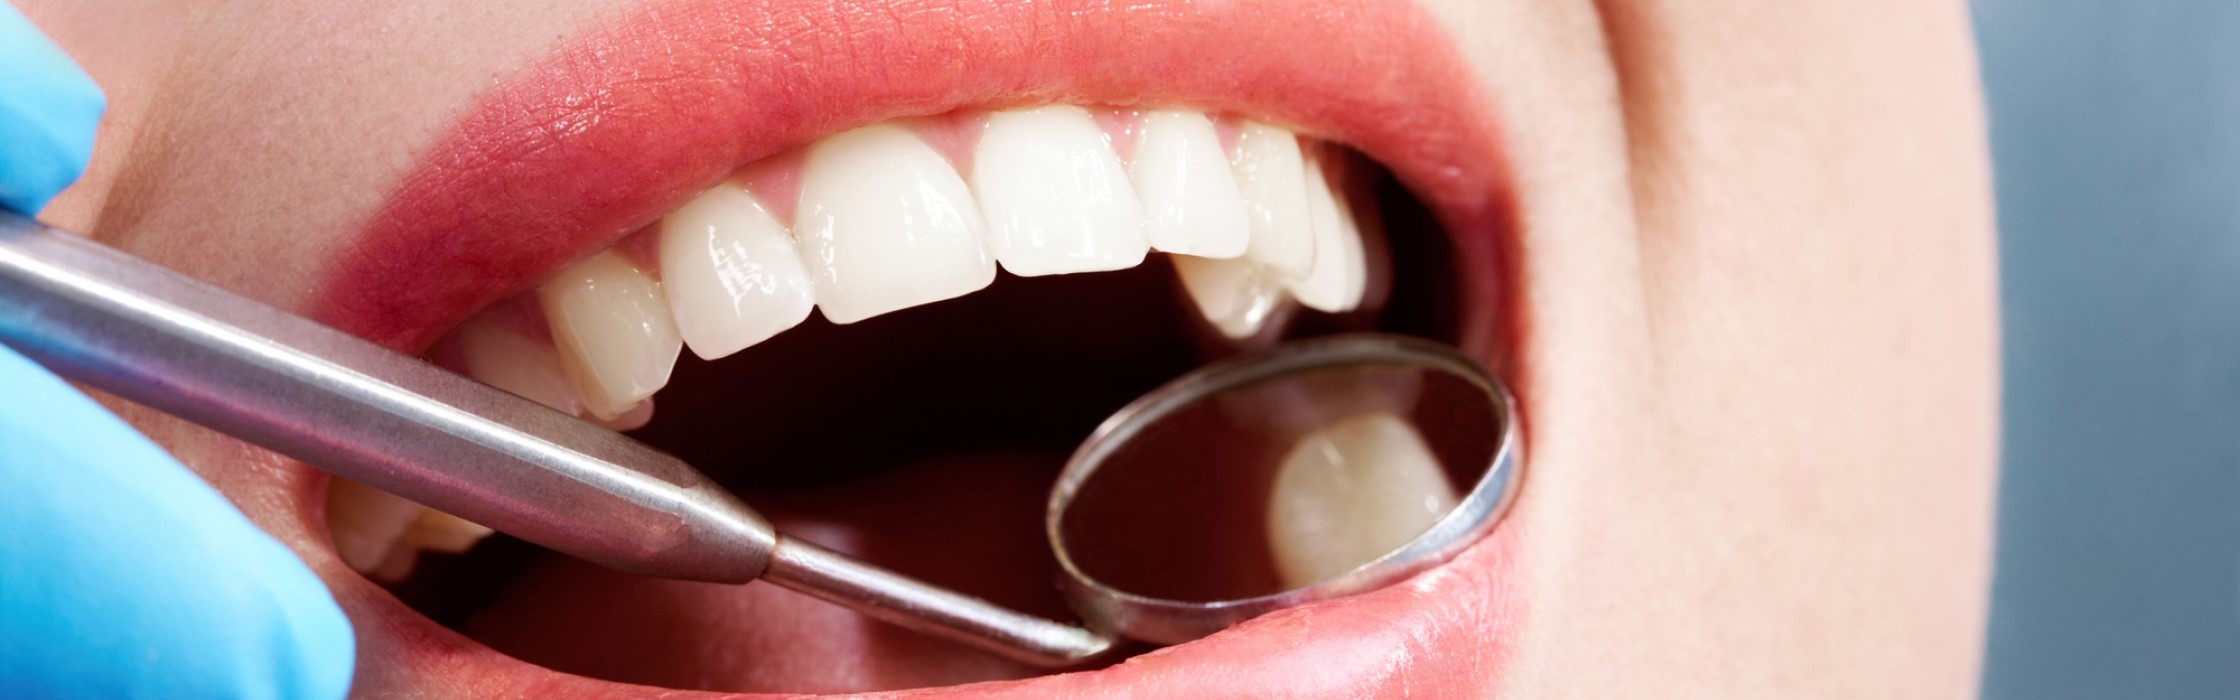 Kariesbehandlung: von Karies befallene Zähne retten